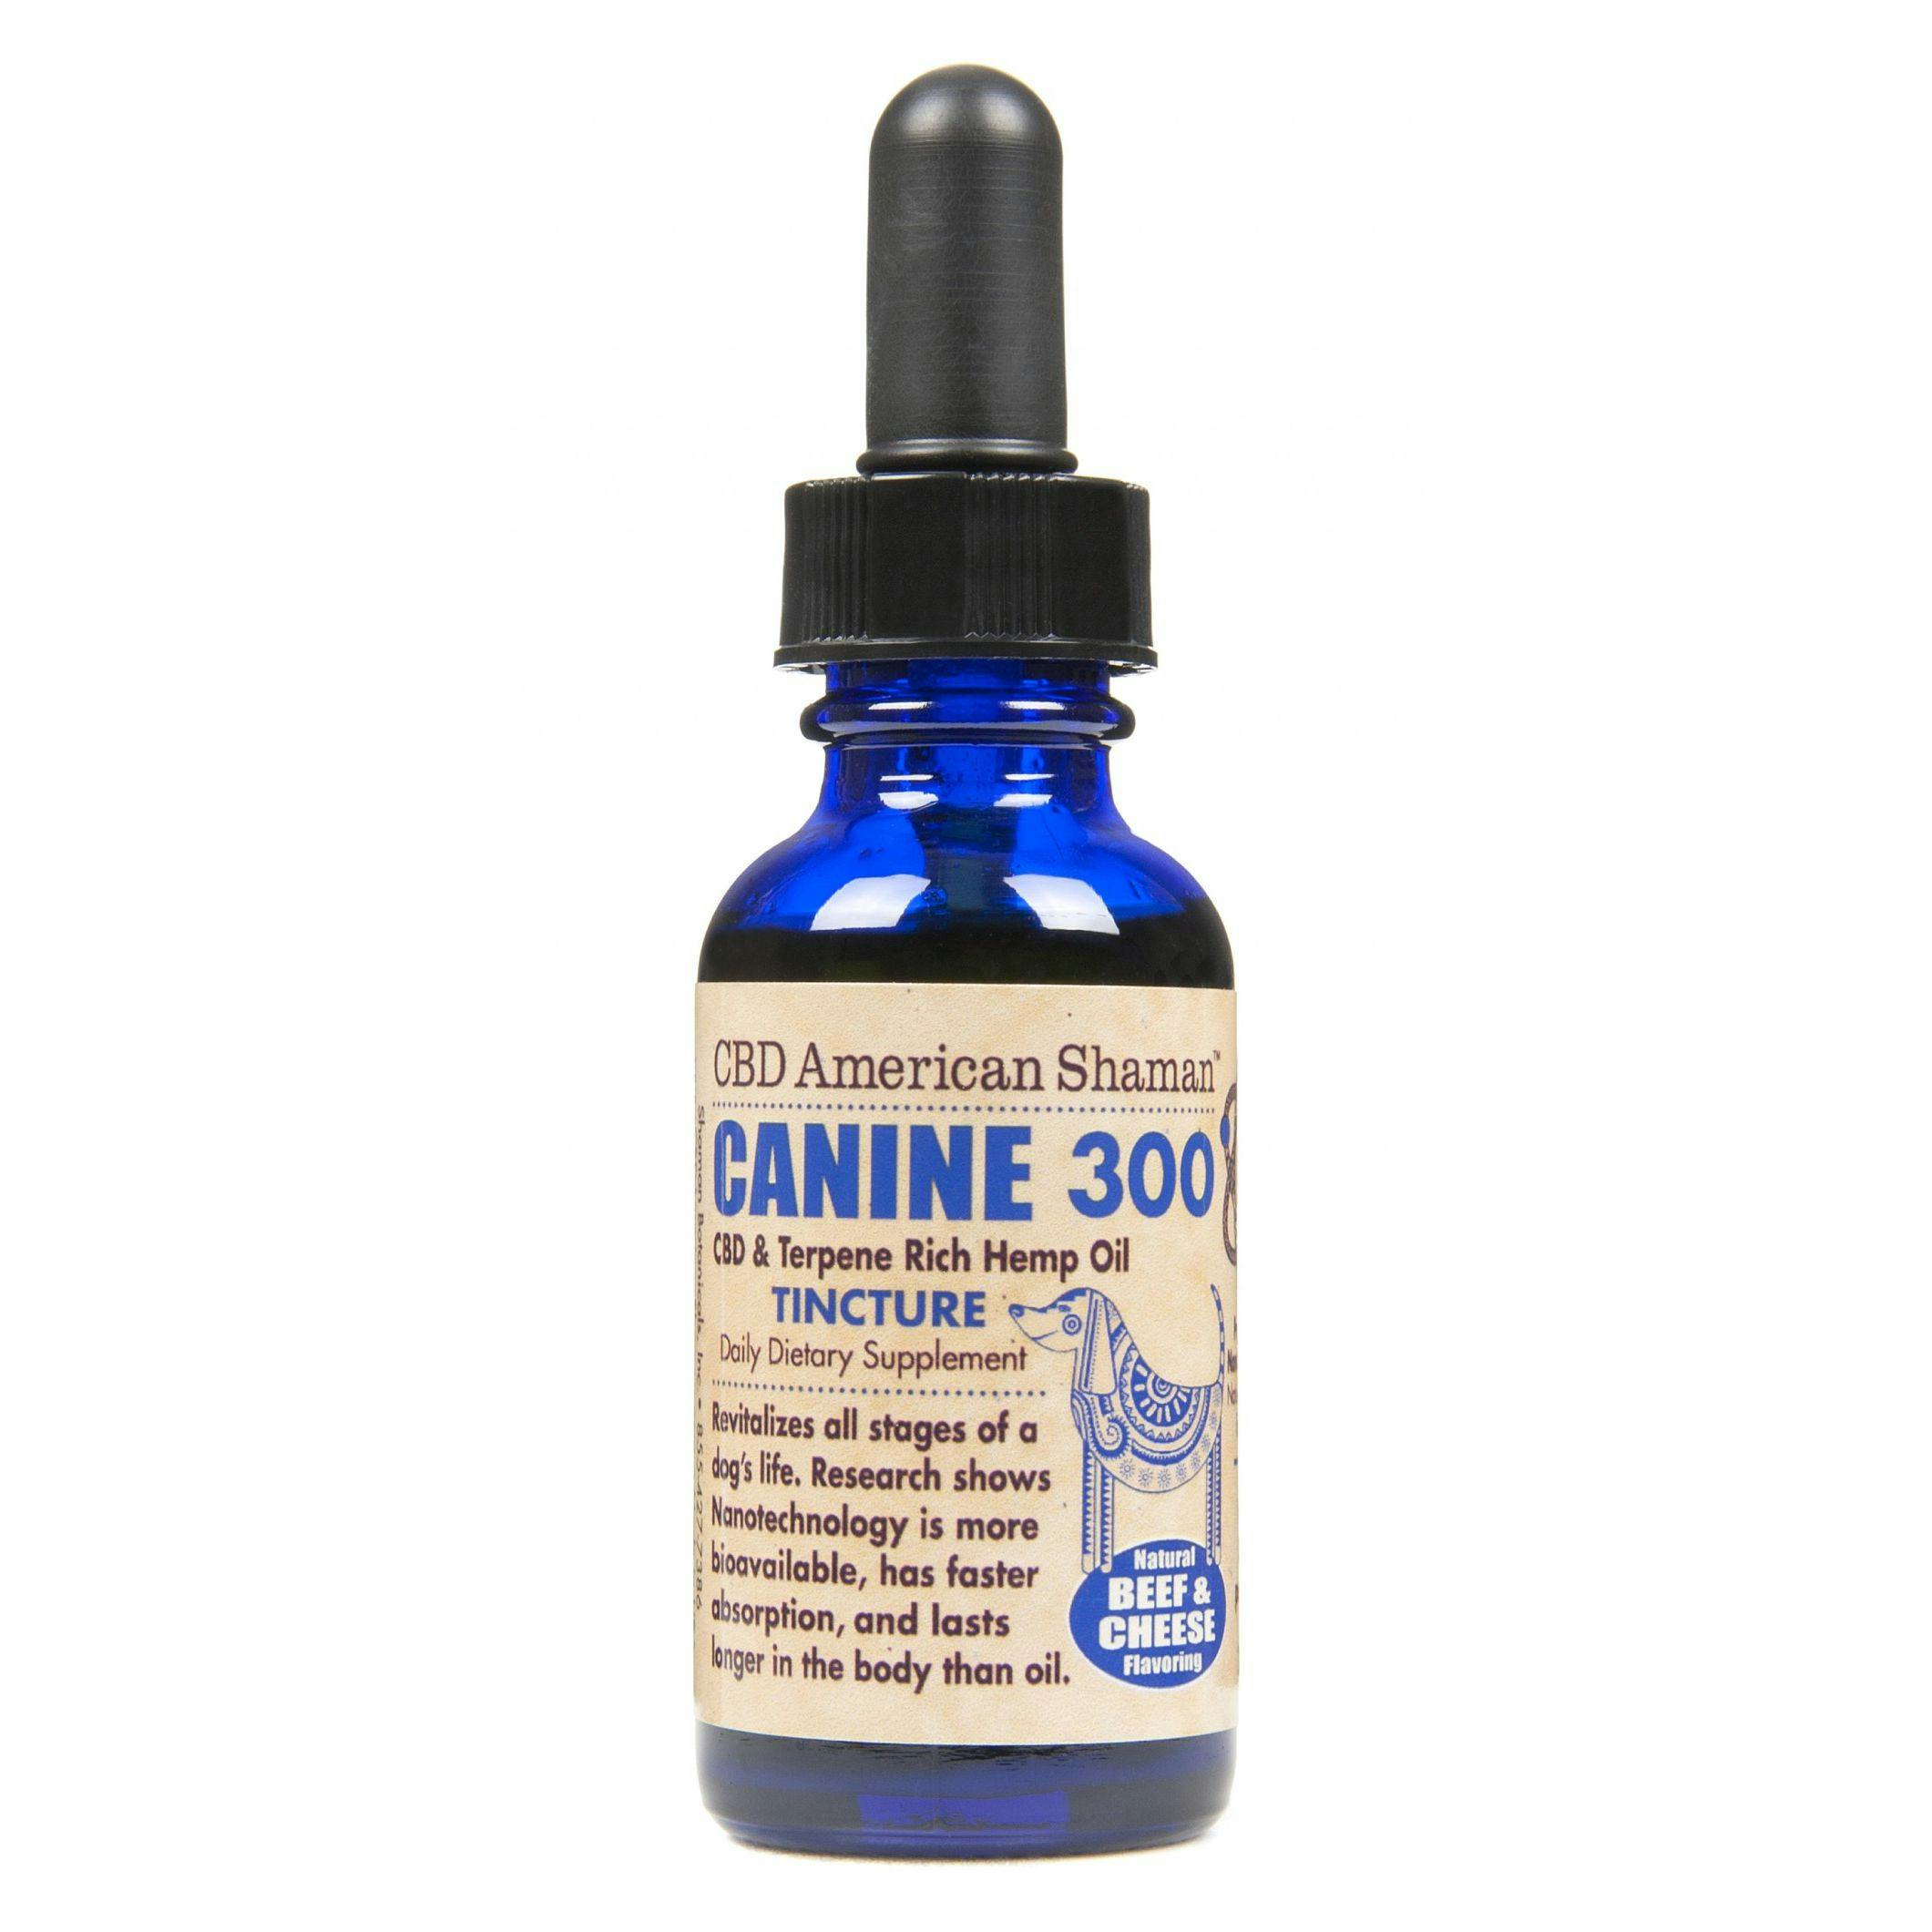 Canine 300 cbd oil